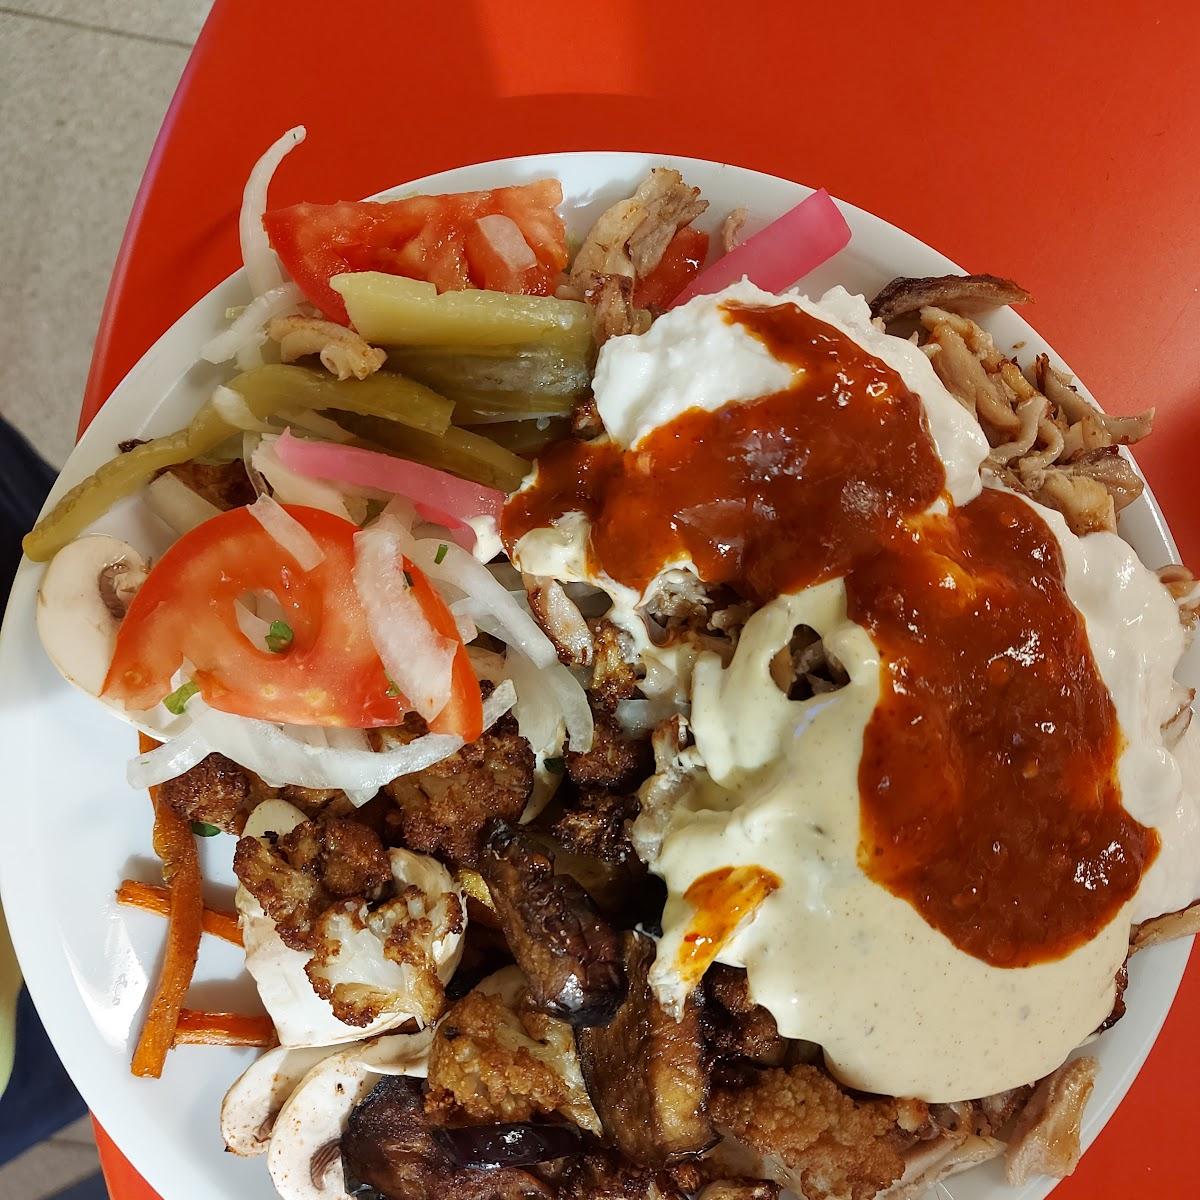 Restaurant "Shawarma Lebanon" in Berlin